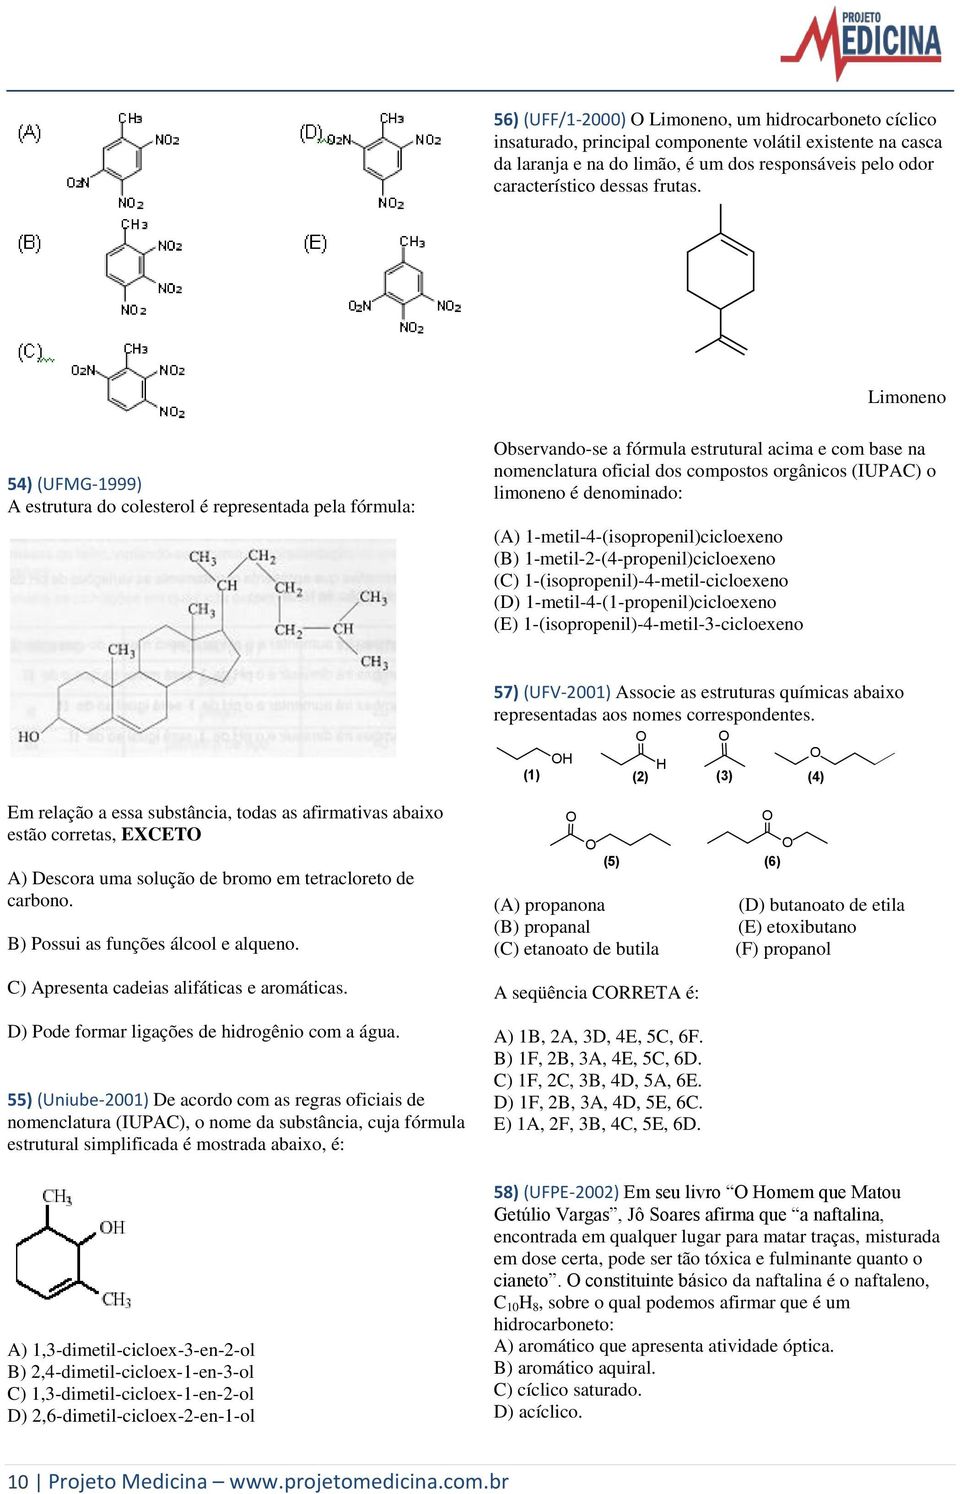 Limoneno 54) (UFMG-1999) A estrutura do colesterol é representada pela fórmula: Observando-se a fórmula estrutural acima e com base na nomenclatura oficial dos compostos orgânicos (IUPAC) o limoneno